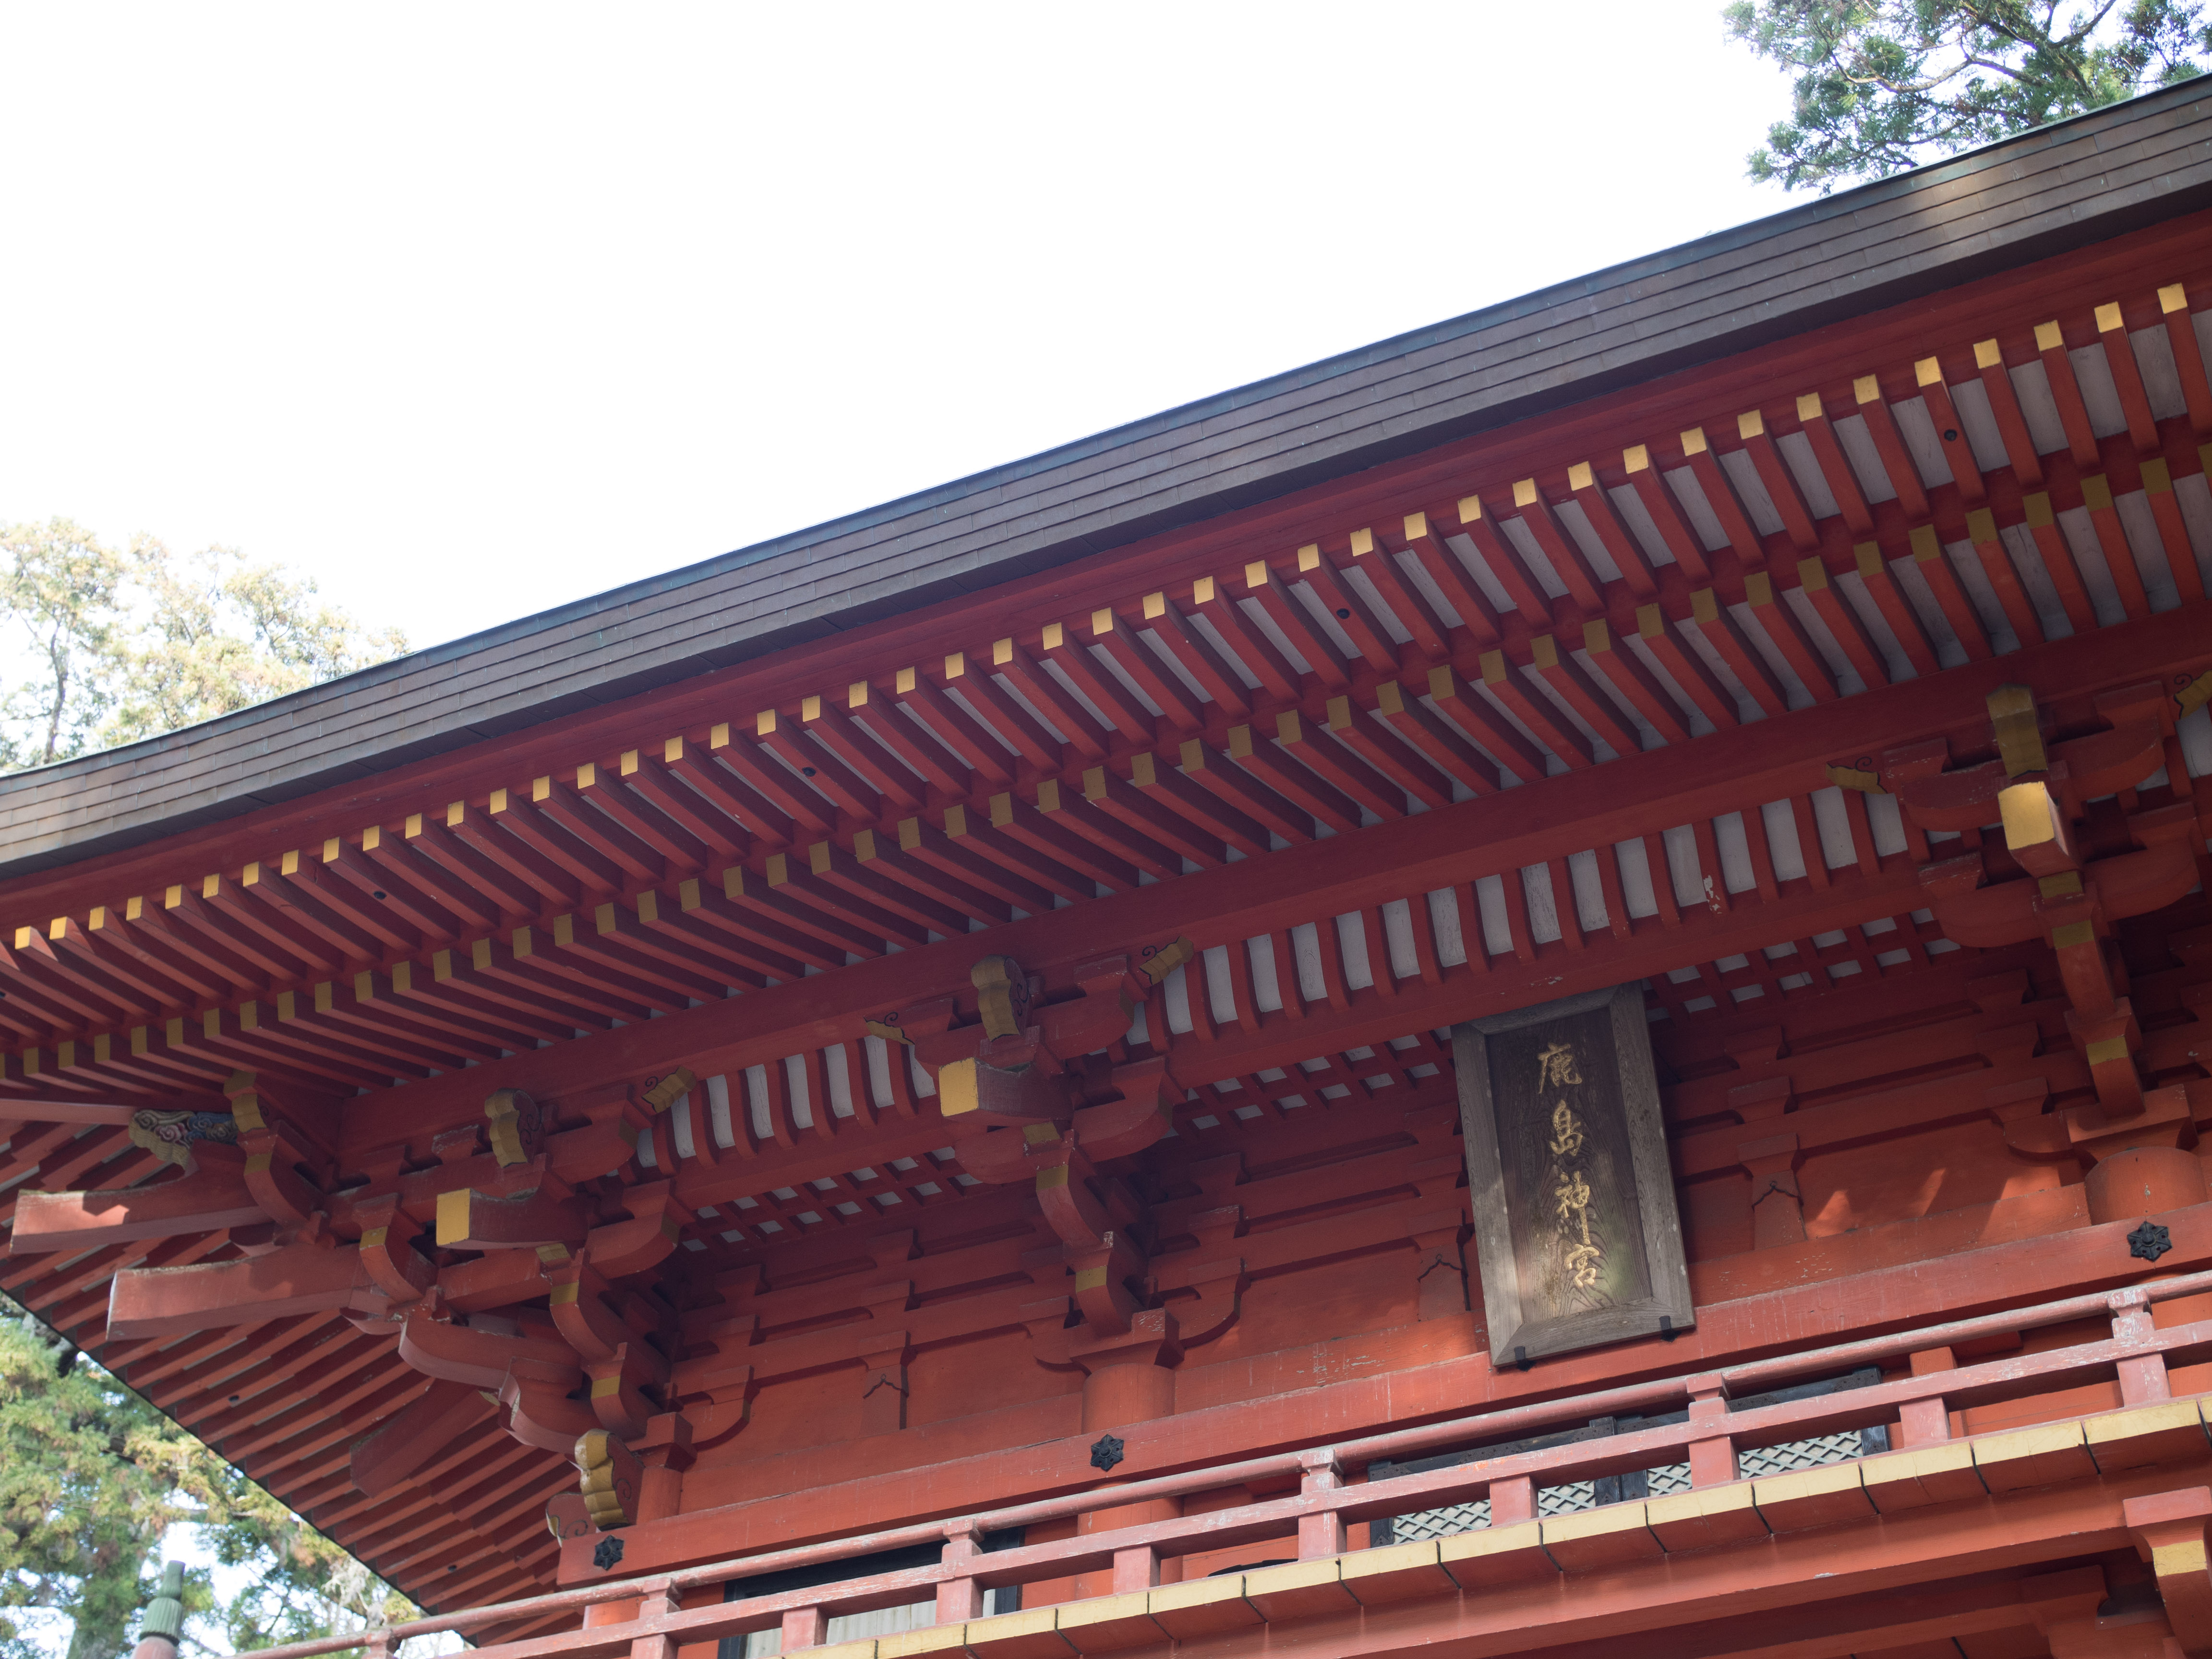 鹿島神宮に初詣に行って来たら2017年はじまった気がした